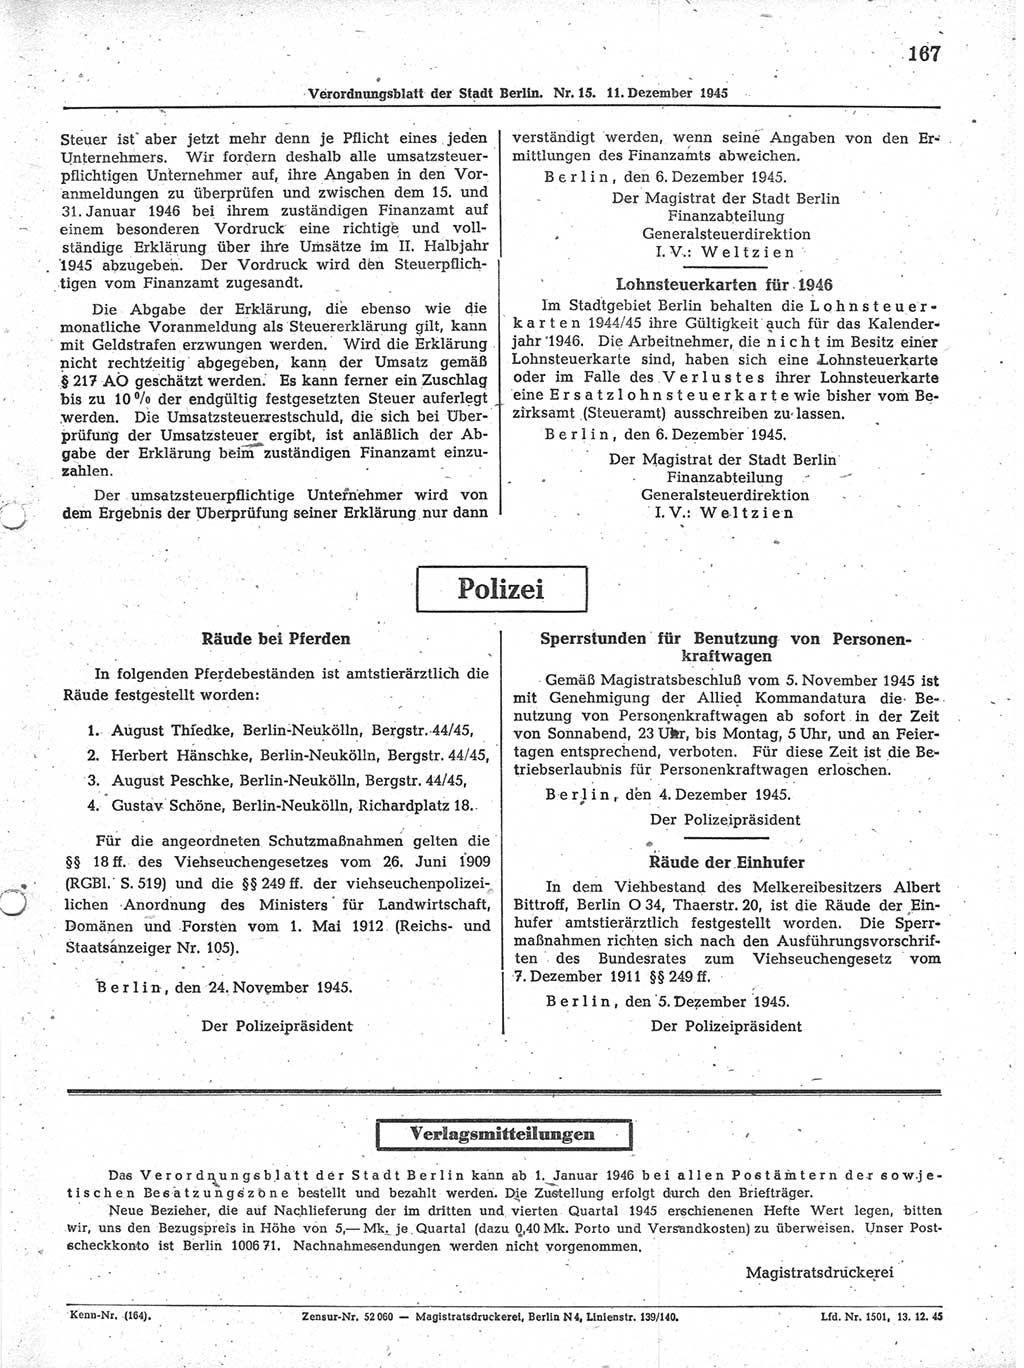 Verordnungsblatt (VOBl.) der Stadt Berlin 1945, Seite 167 (VOBl. Bln. 1945, S. 167)